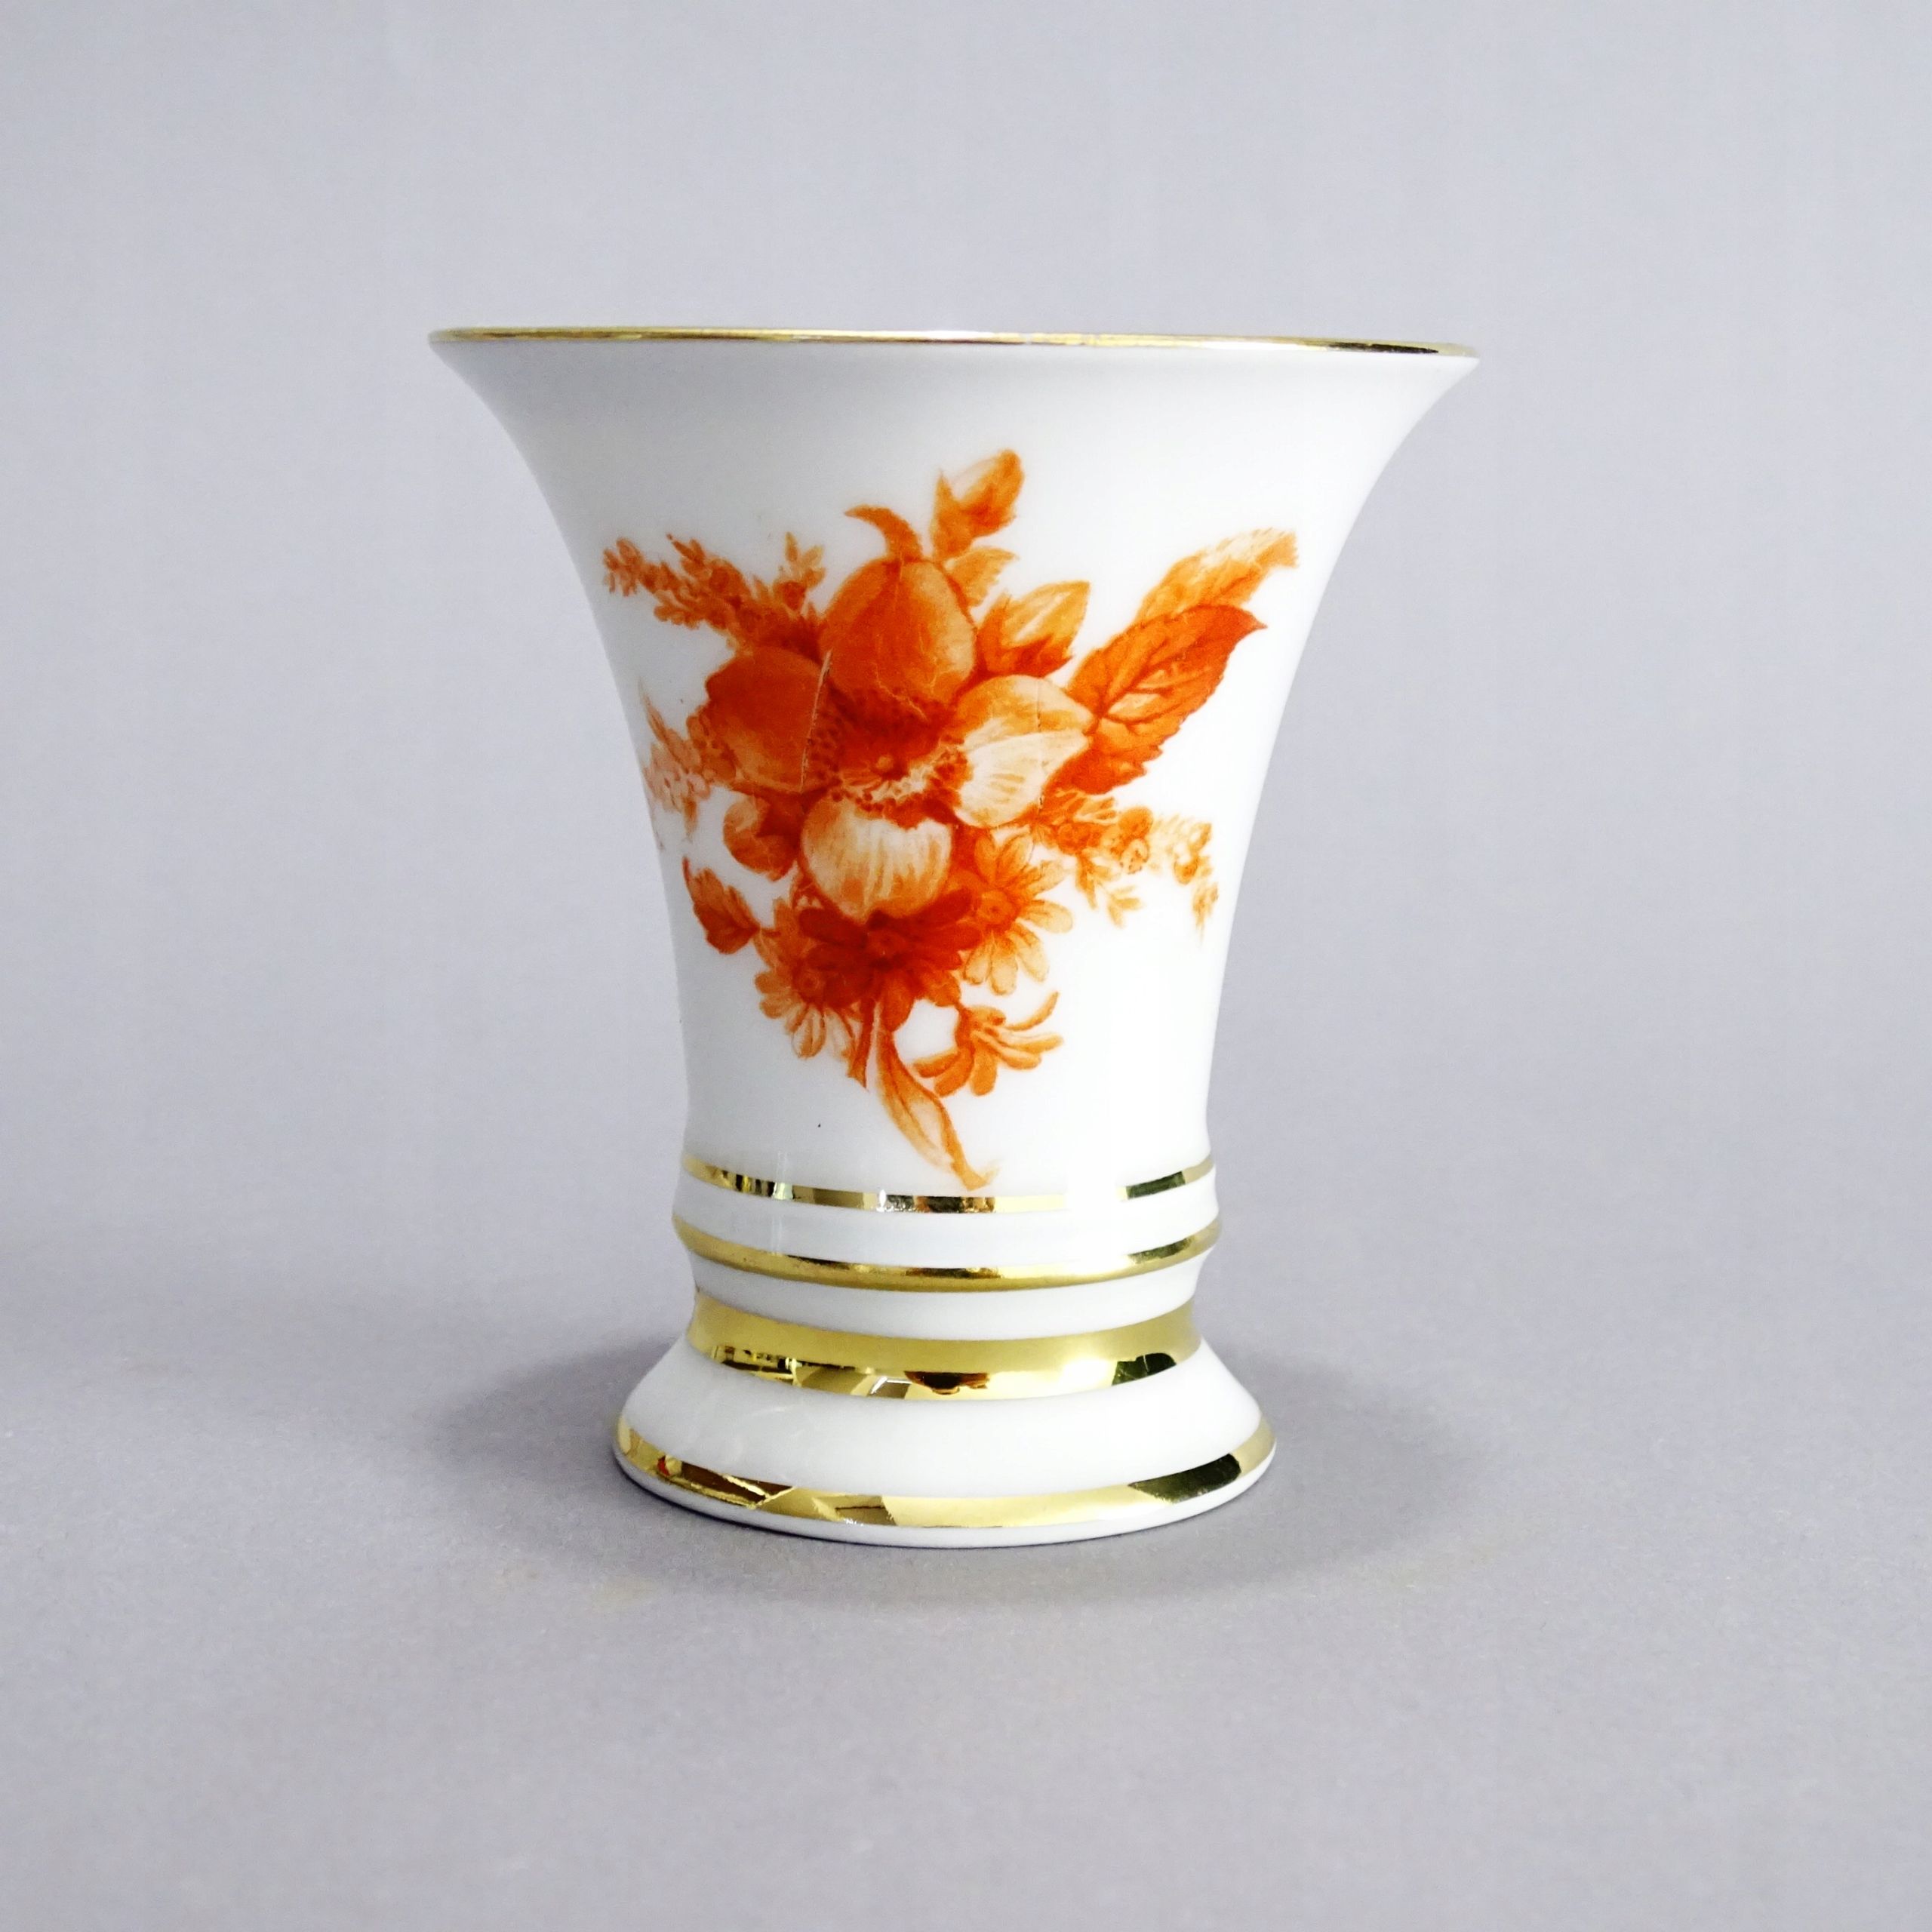 furstenberg piękny mały wazonik porcelanowy / czerwone kwiaty